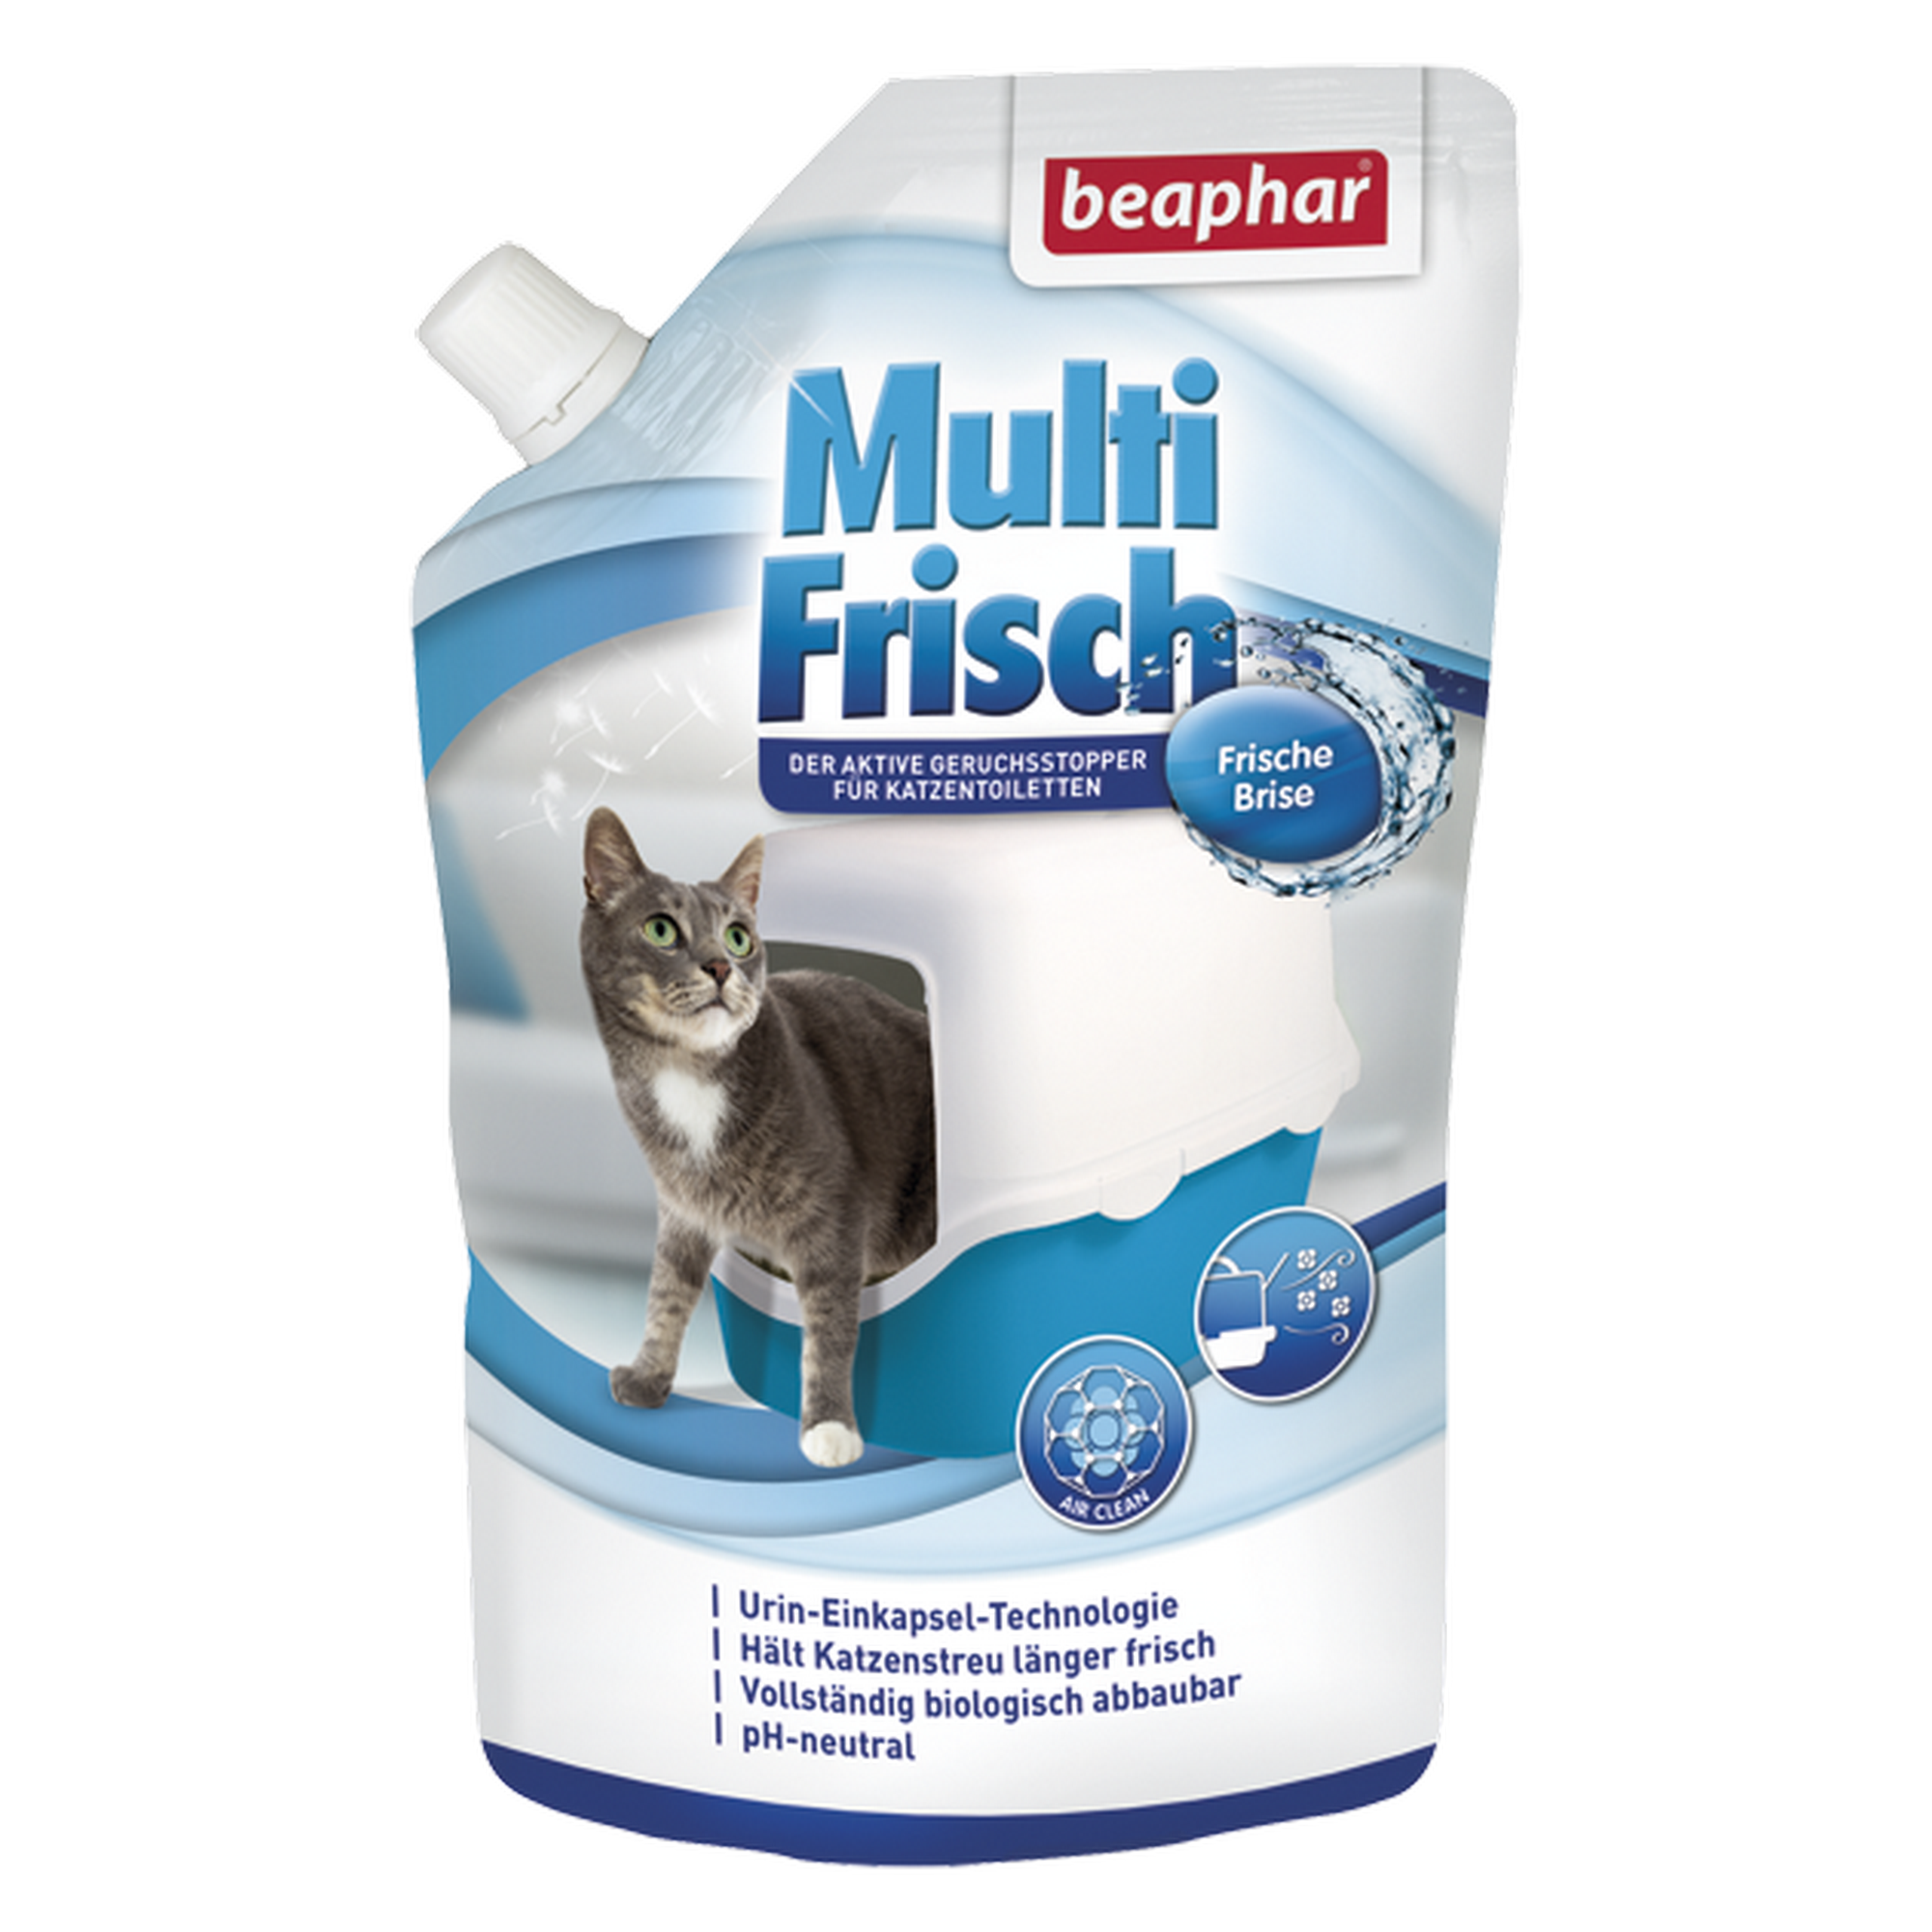 Geruchsstopper für Katzentoiletten 'Multi Frisch' Frische Brise 400 g + product picture